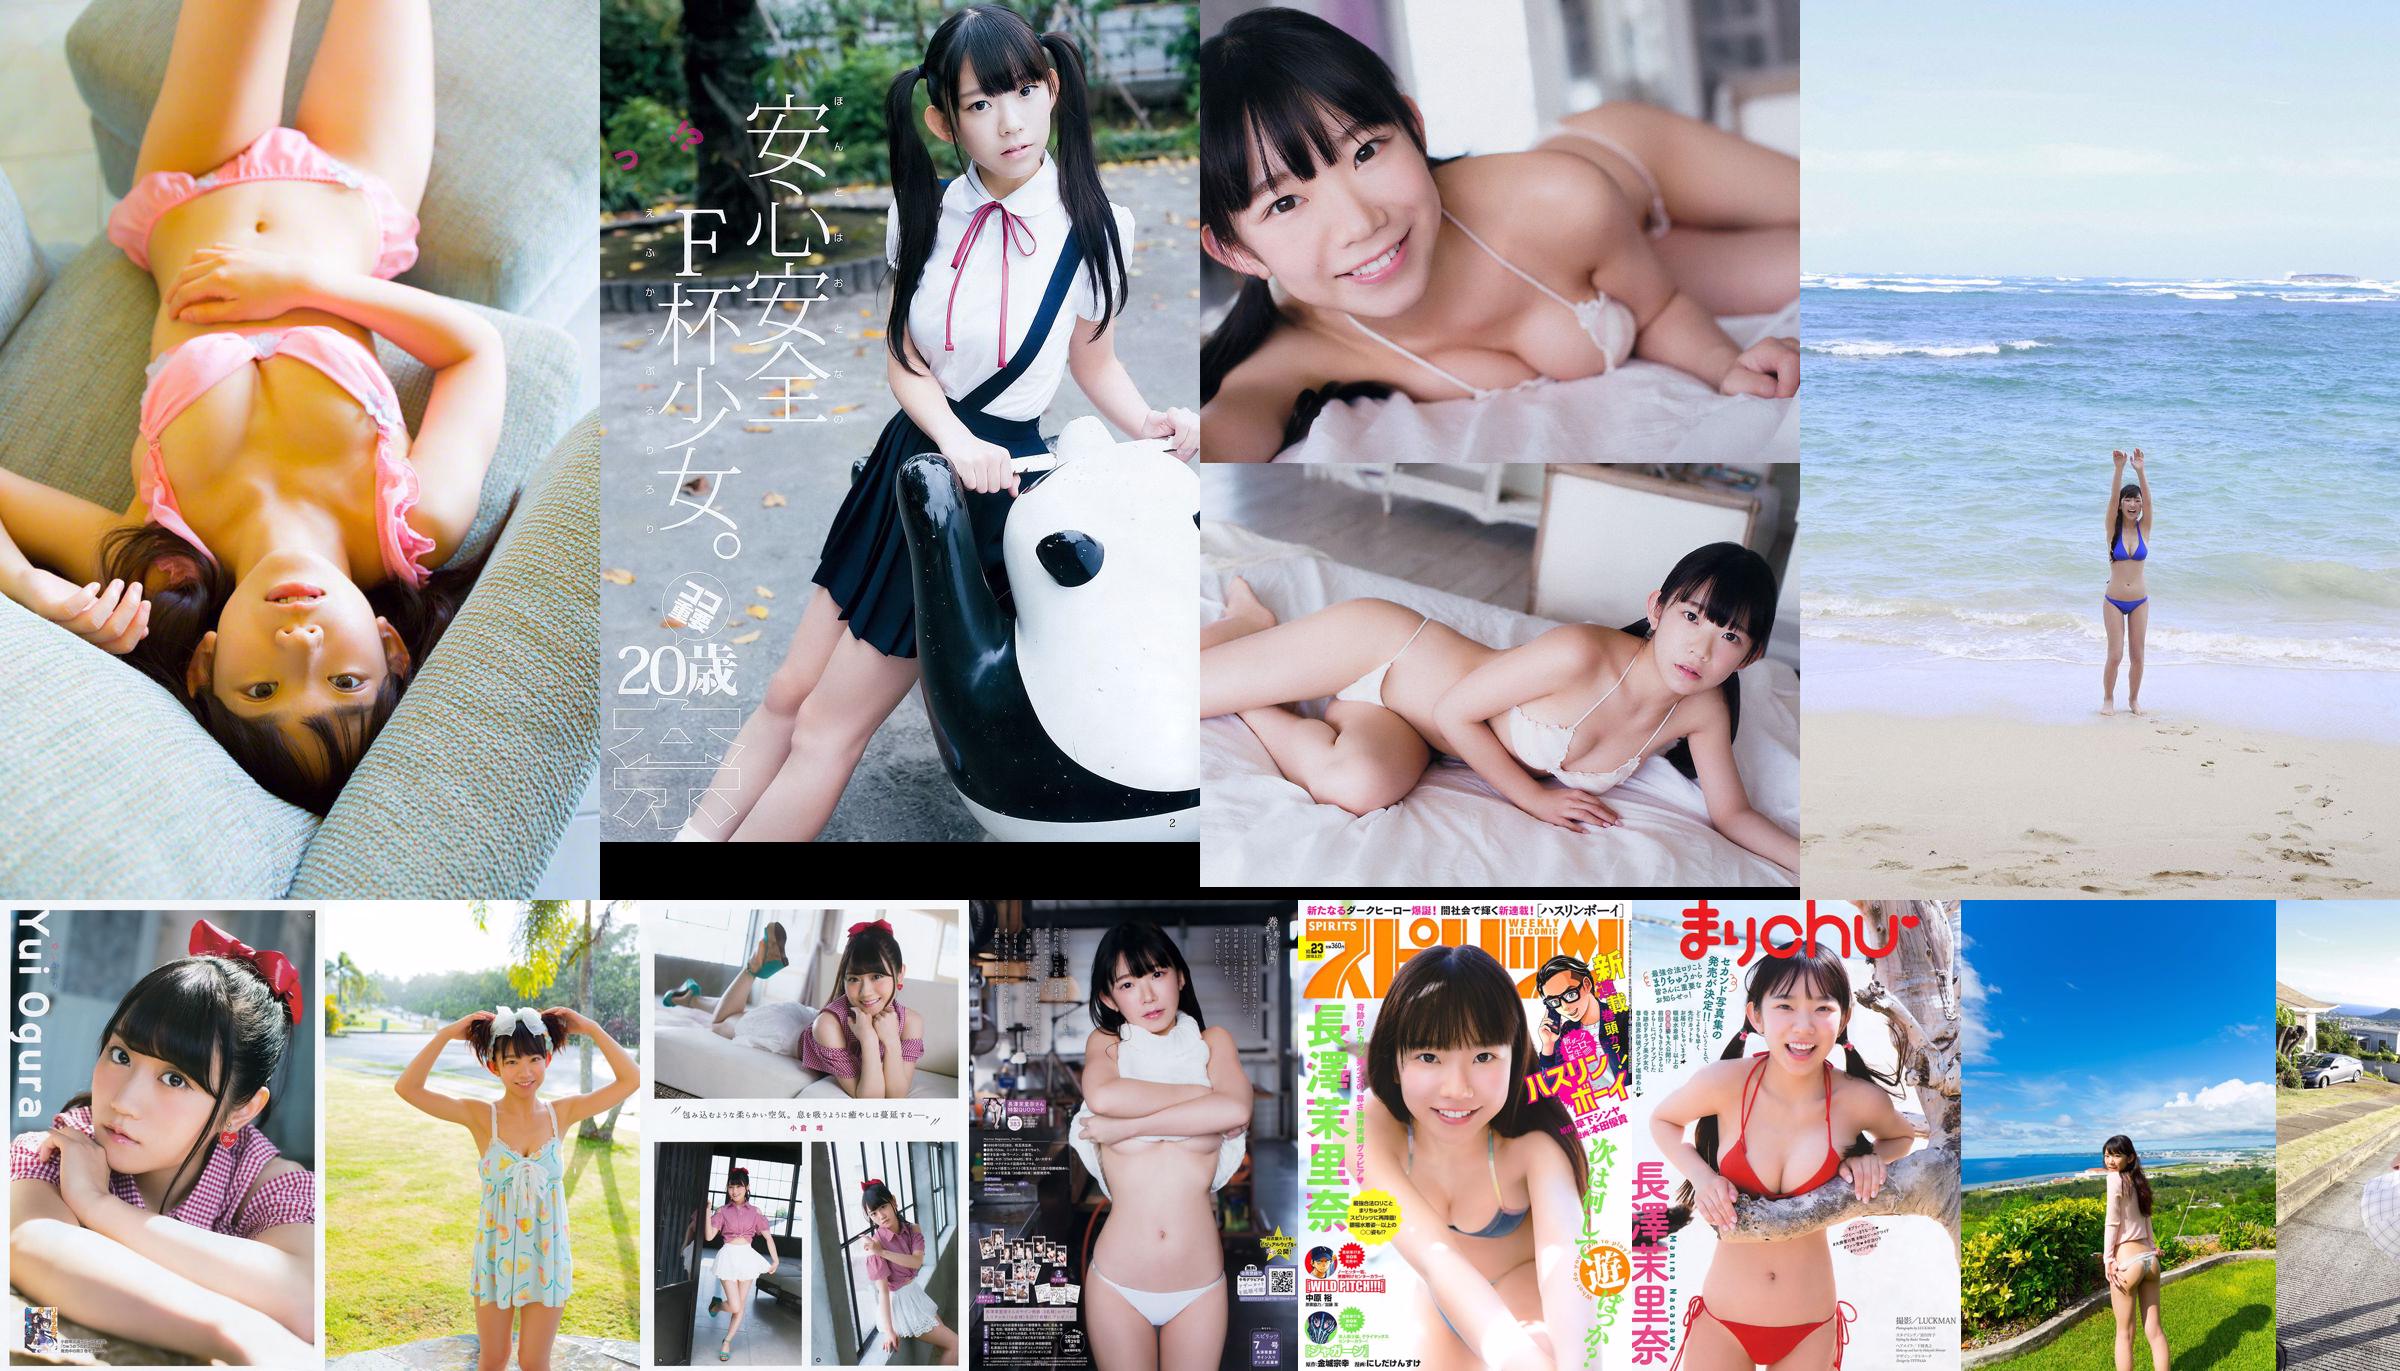 [Young Gangan] Yuikaori Nagasawa Marina 2016 No.19照片 No.c12c4a 第1頁